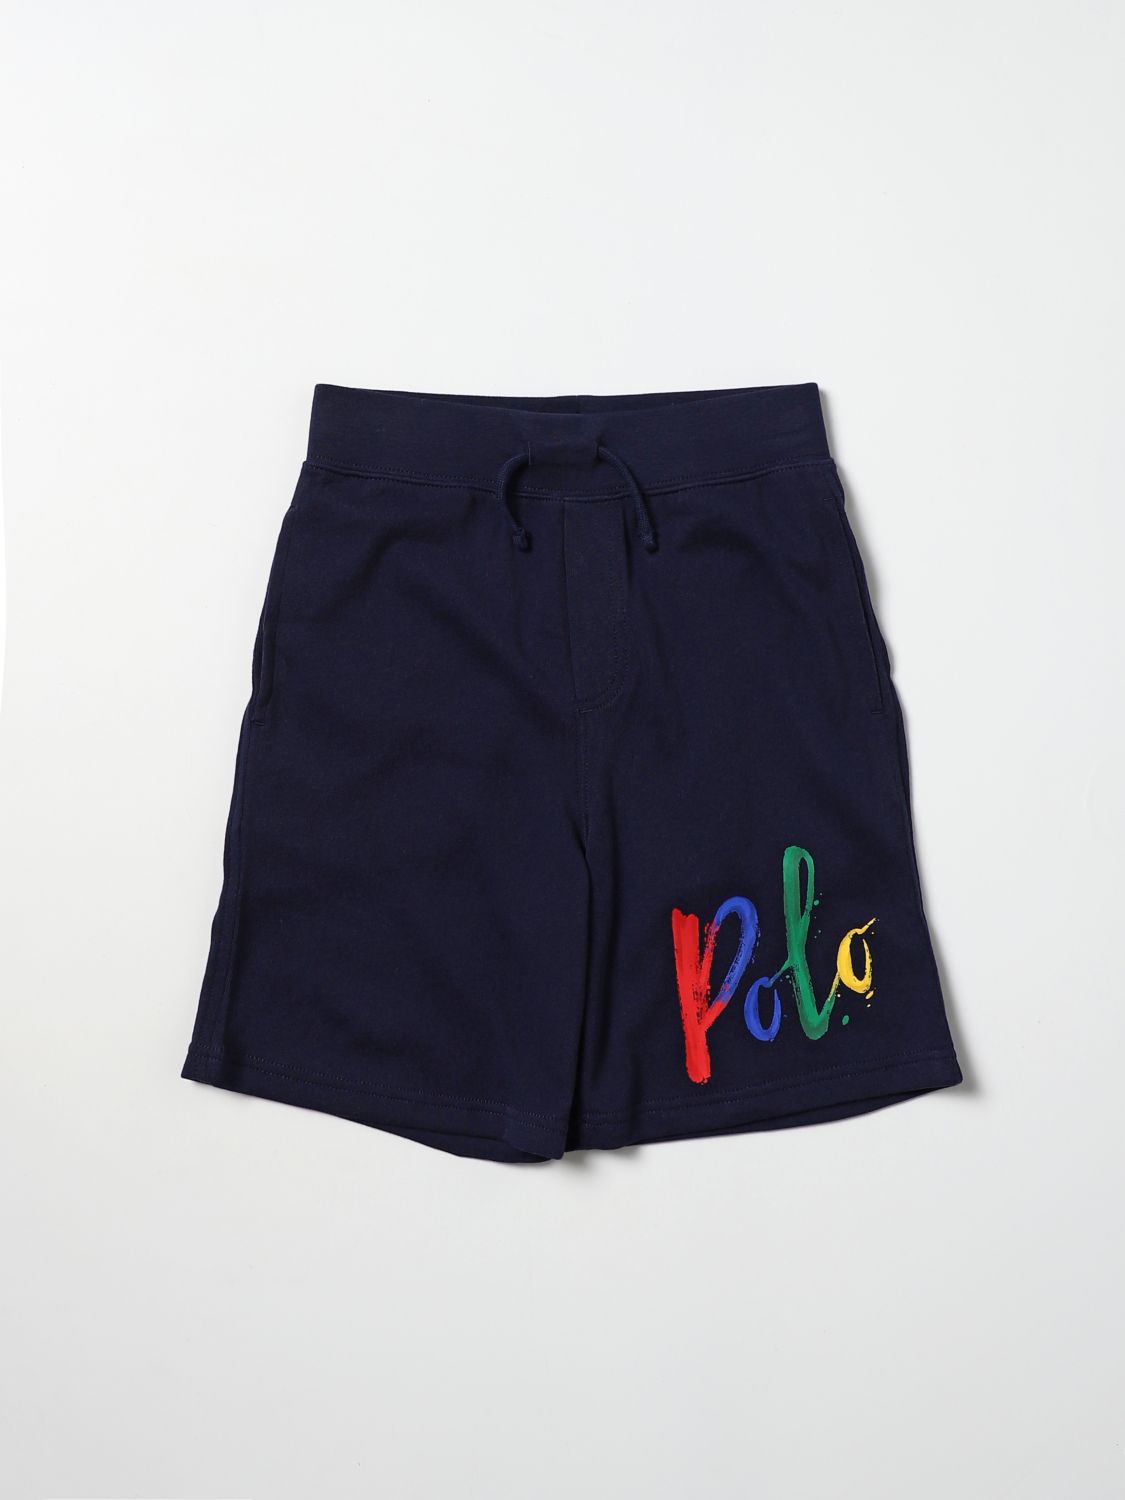 Pantaloncino Polo Ralph Lauren: Pantaloncino Polo Ralph Lauren bambino blue navy 1